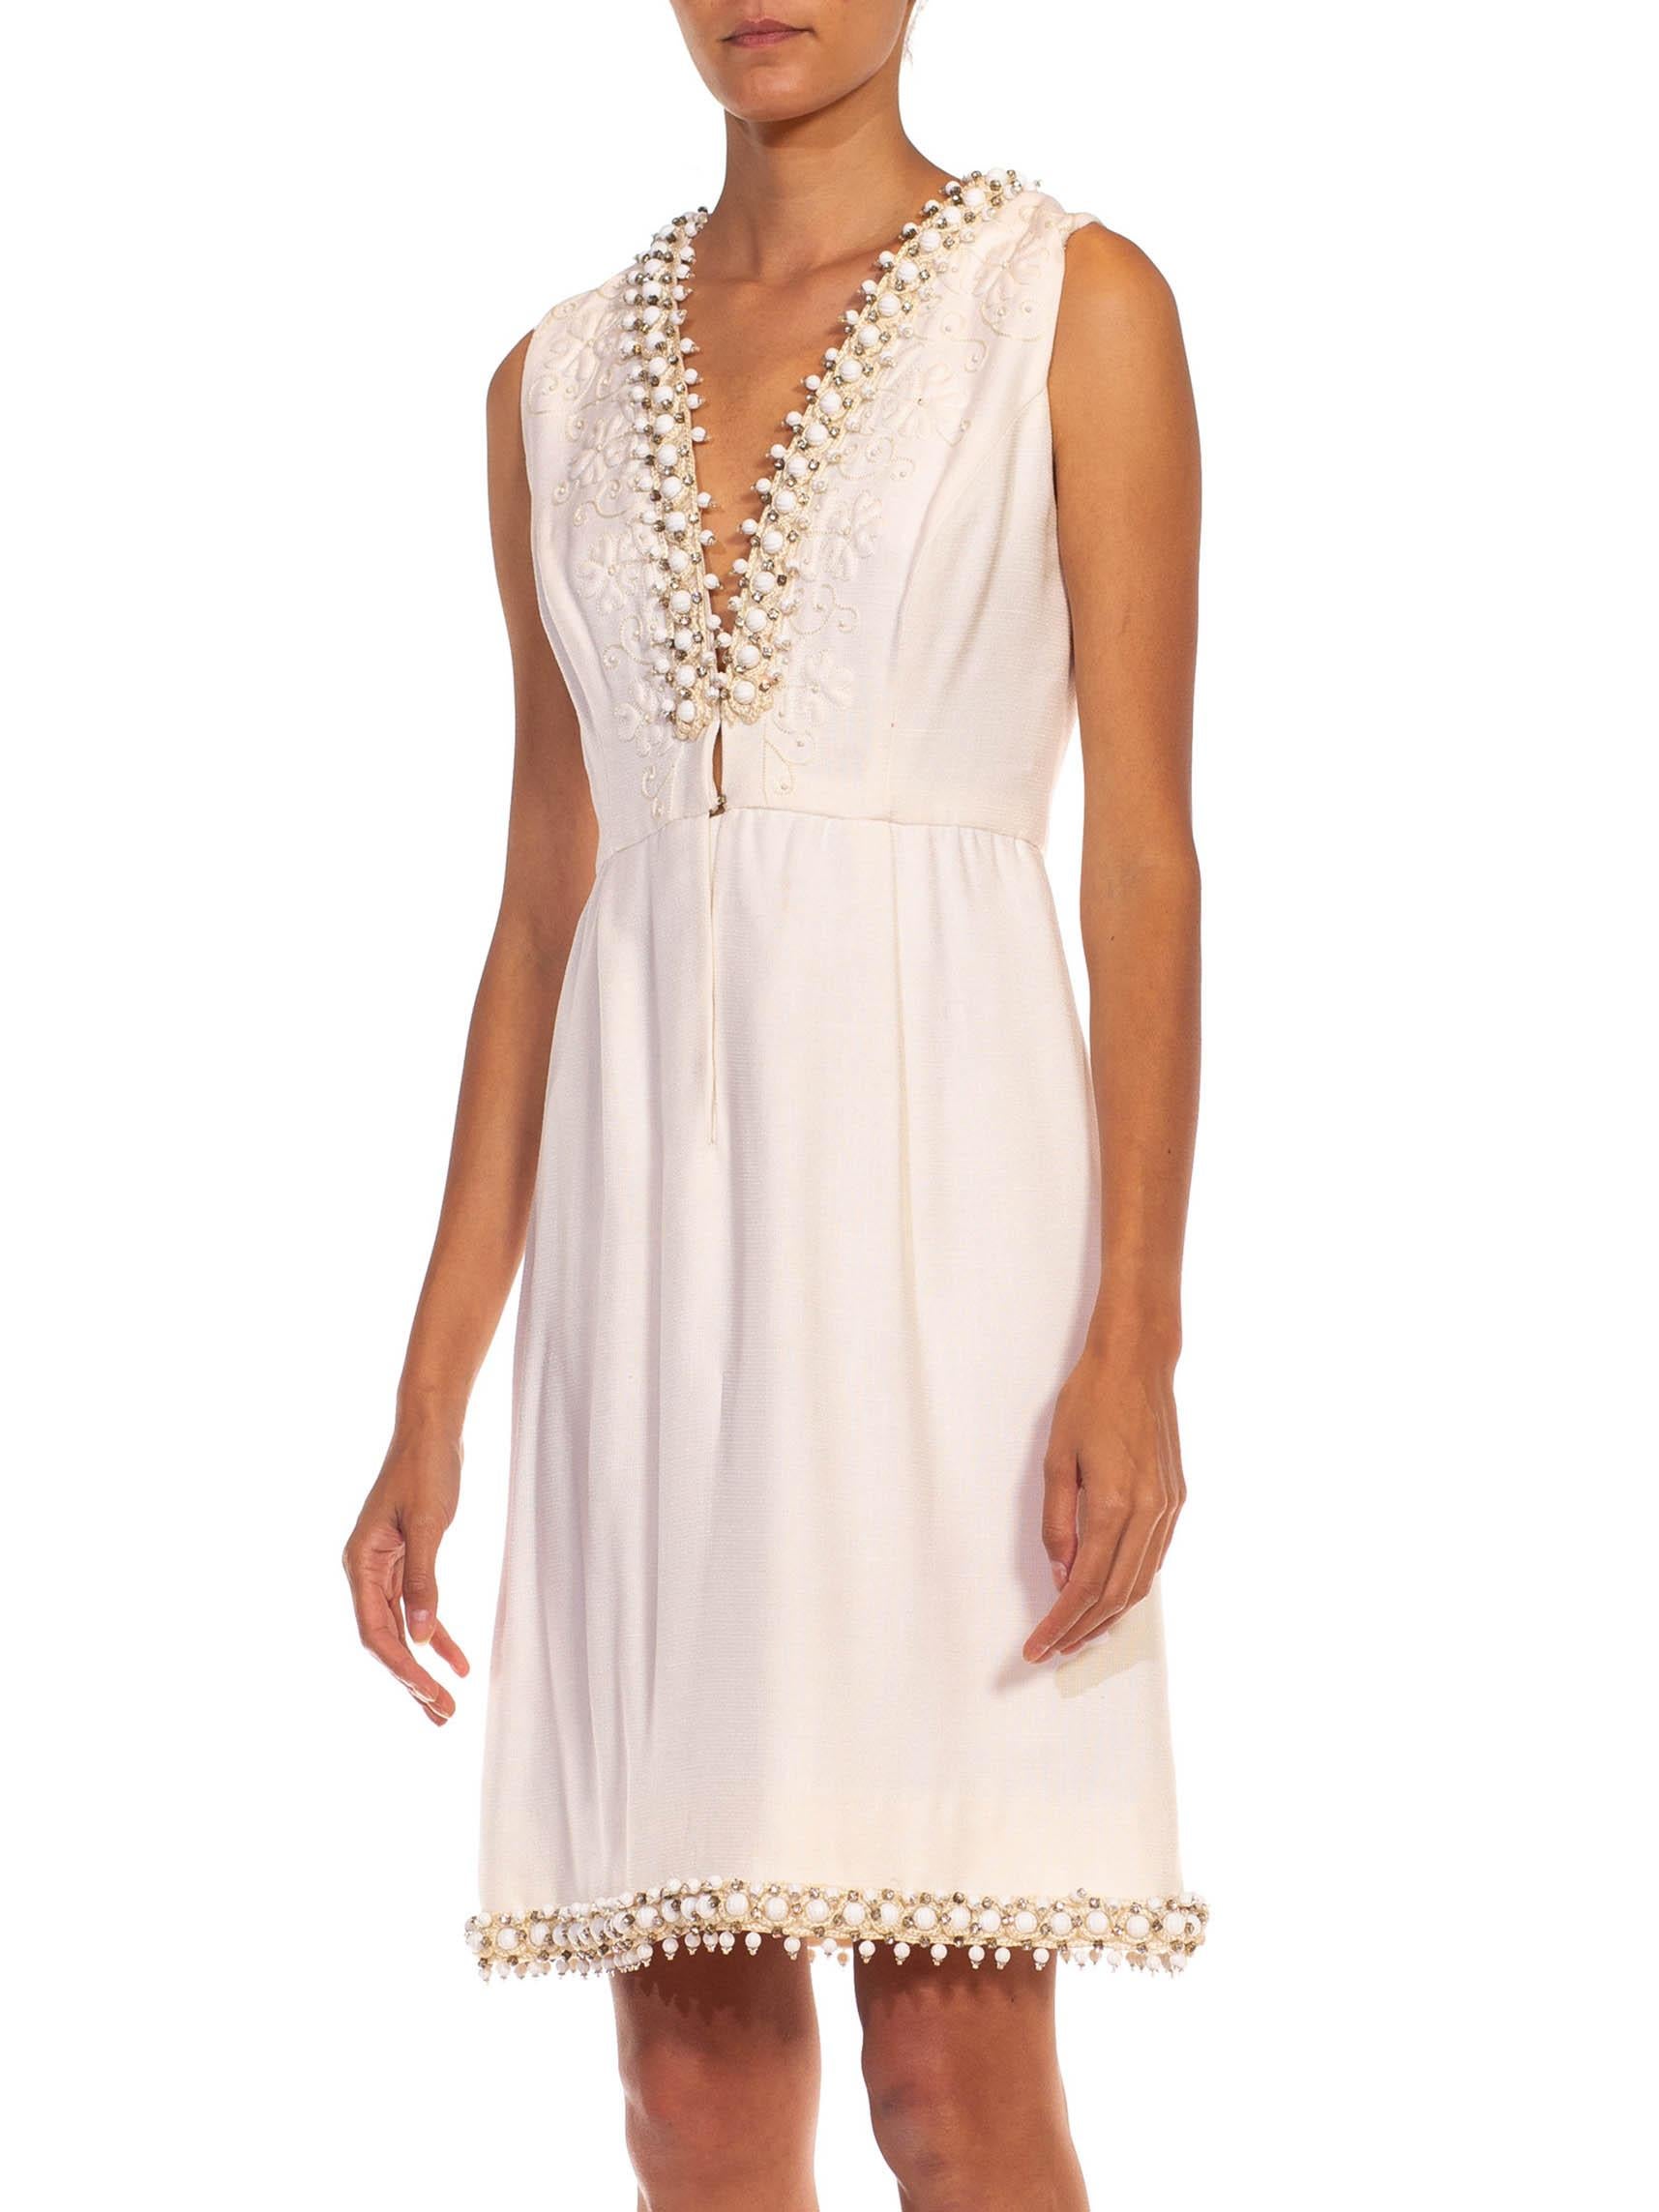 1960S OSCAR DE LA RENTA White Wool Blend Plunging V Neck Mod Dress With Crystals For Sale 3